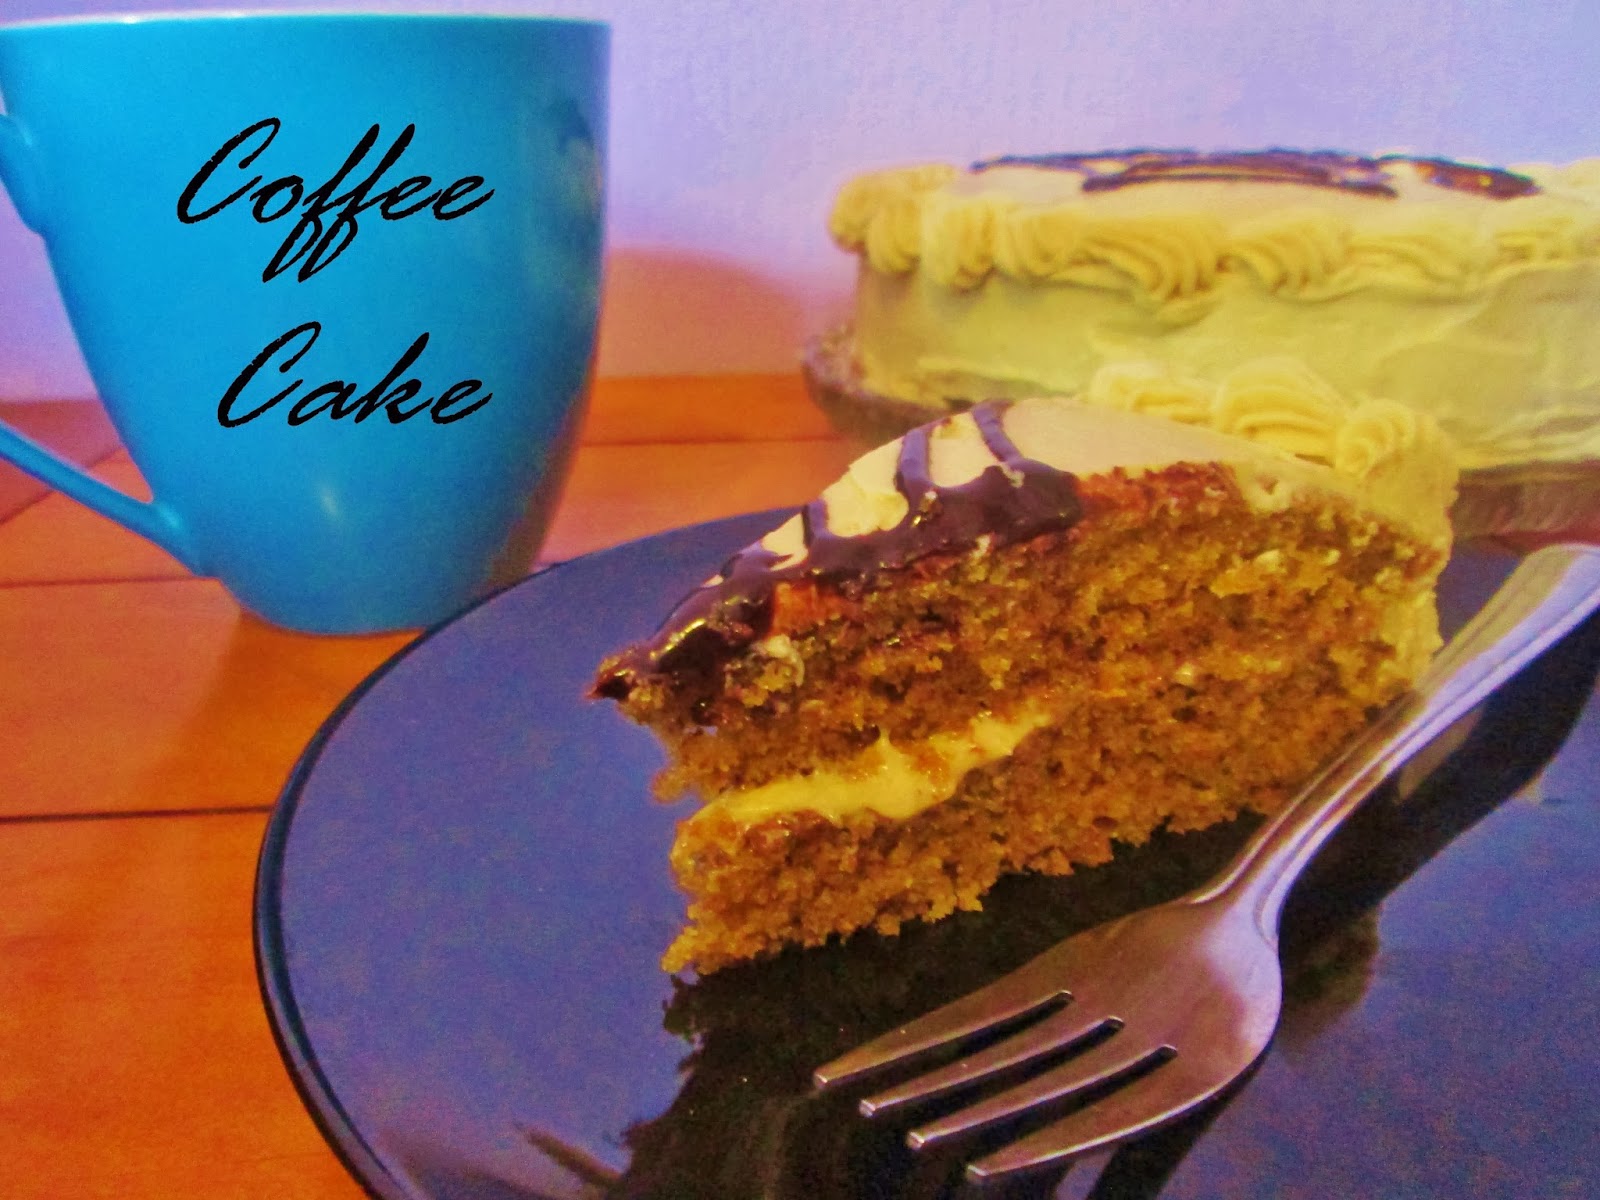 http://themessykitchenuk.blogspot.co.uk/2013/10/coffee-cake.html